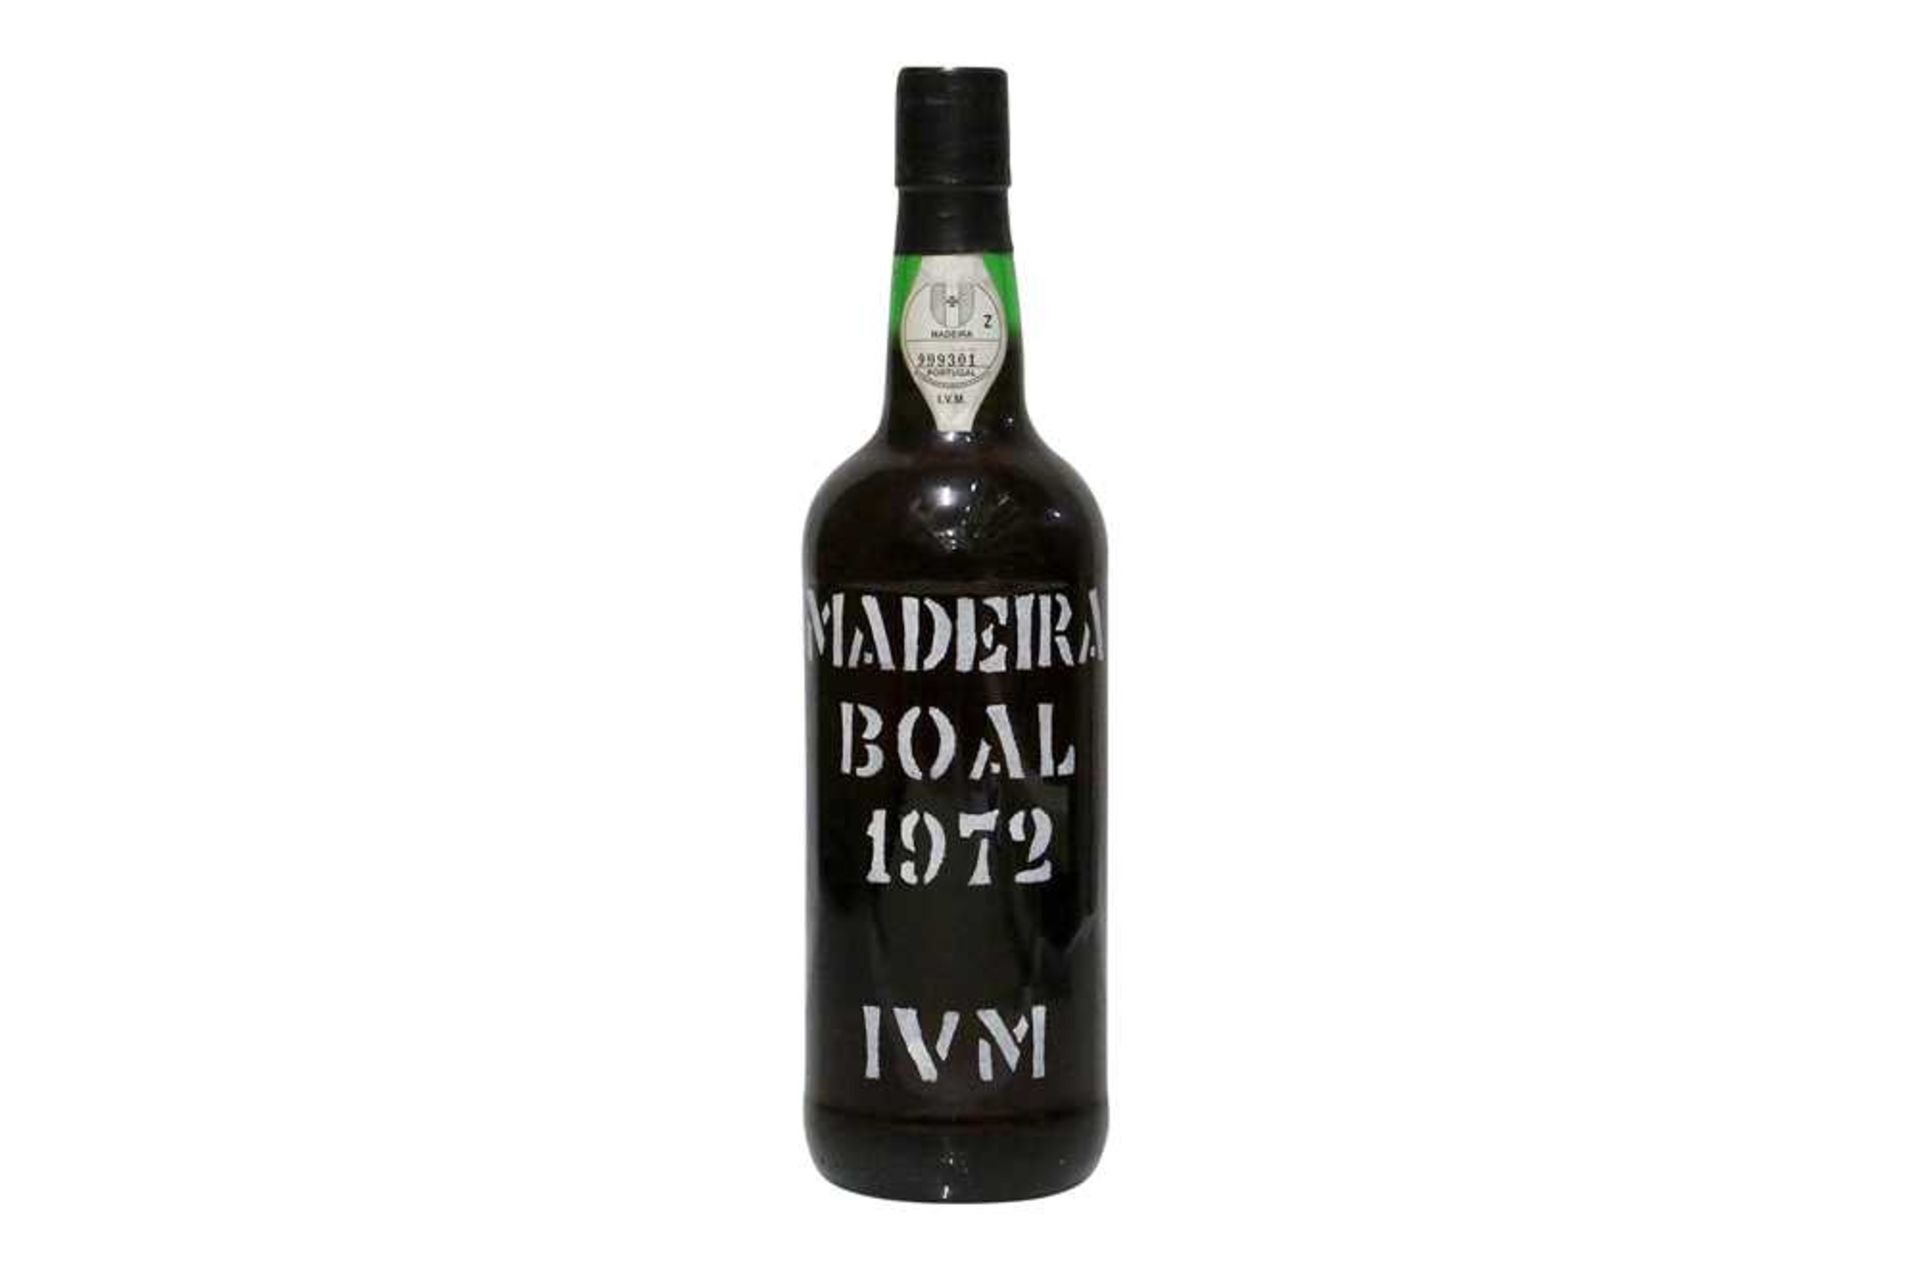 IVM (Instituto Vinho Madeira), Boal Madeira, 1972, one bottle